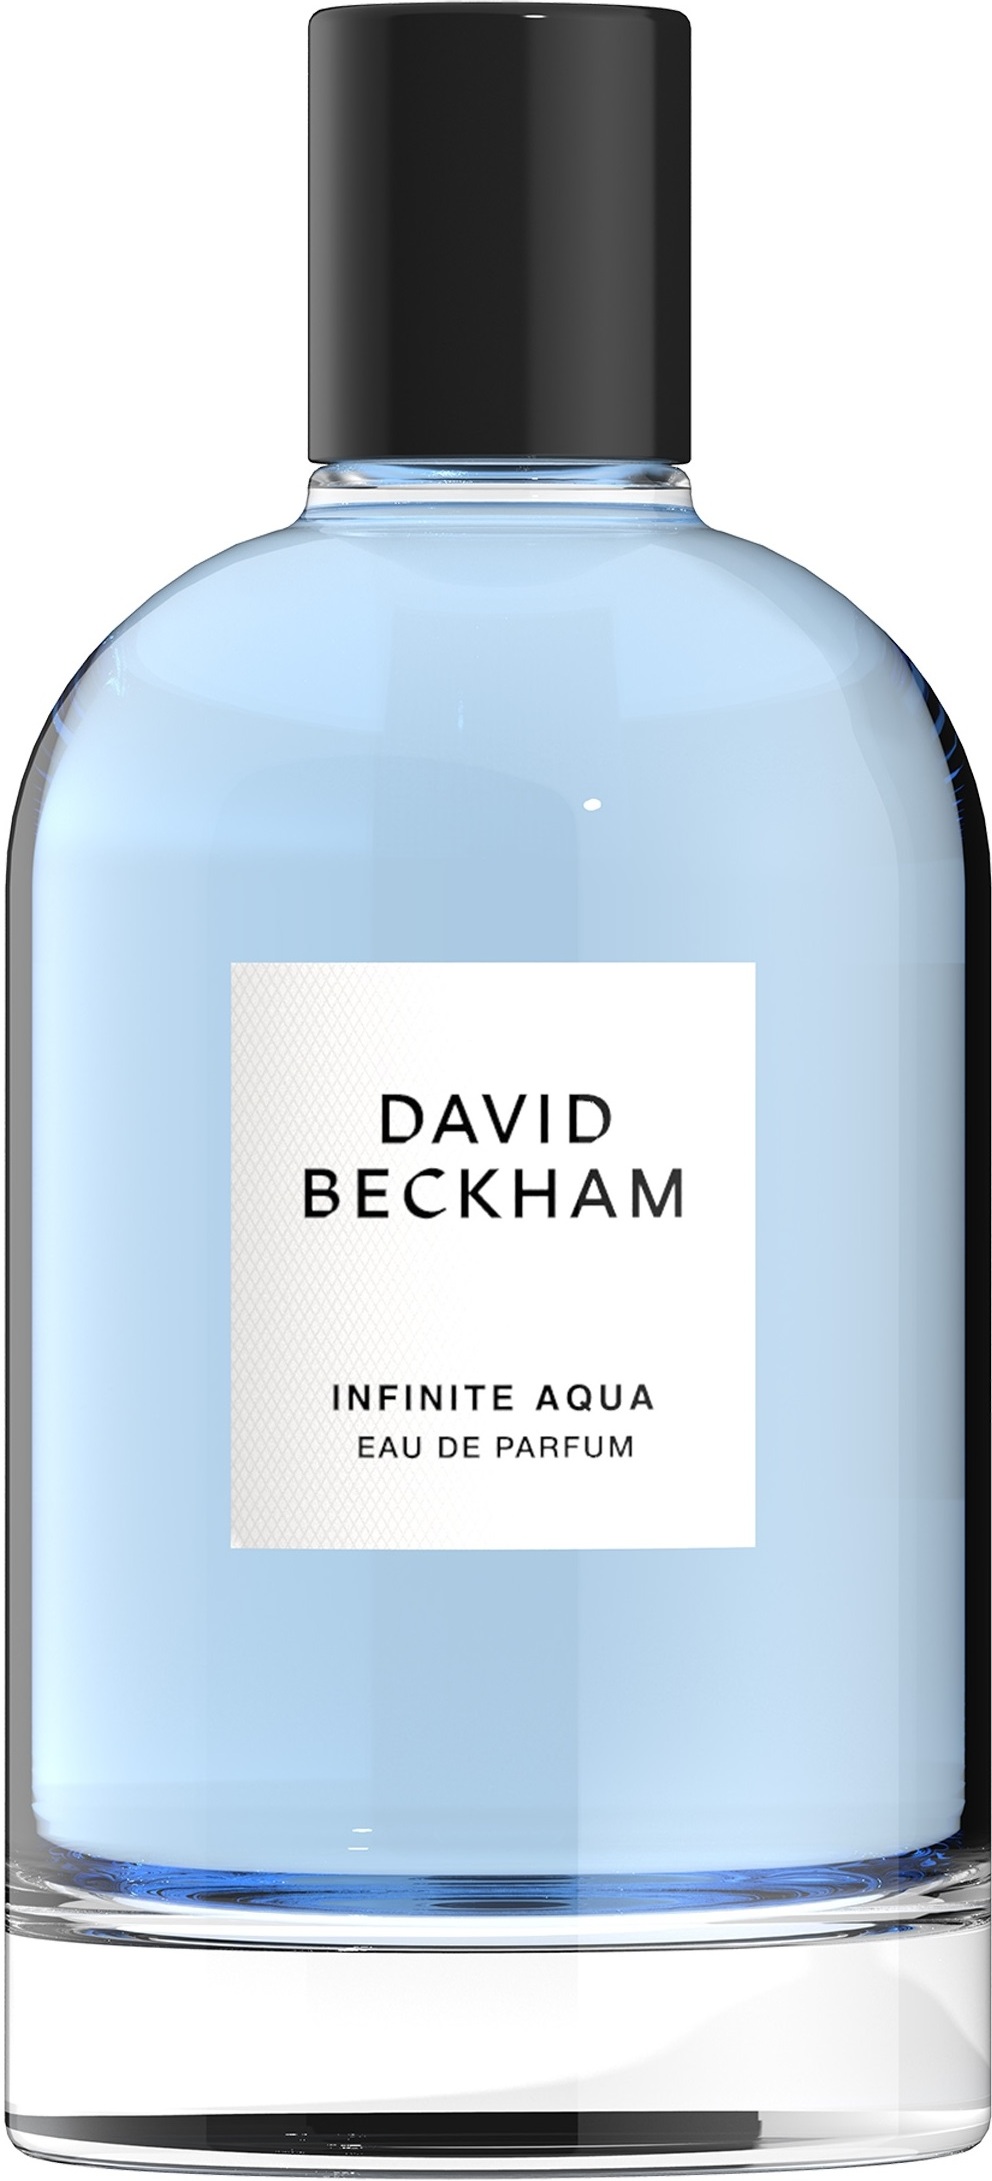 David Beckham Infinite Aqua Eau de Parfum 100 ml